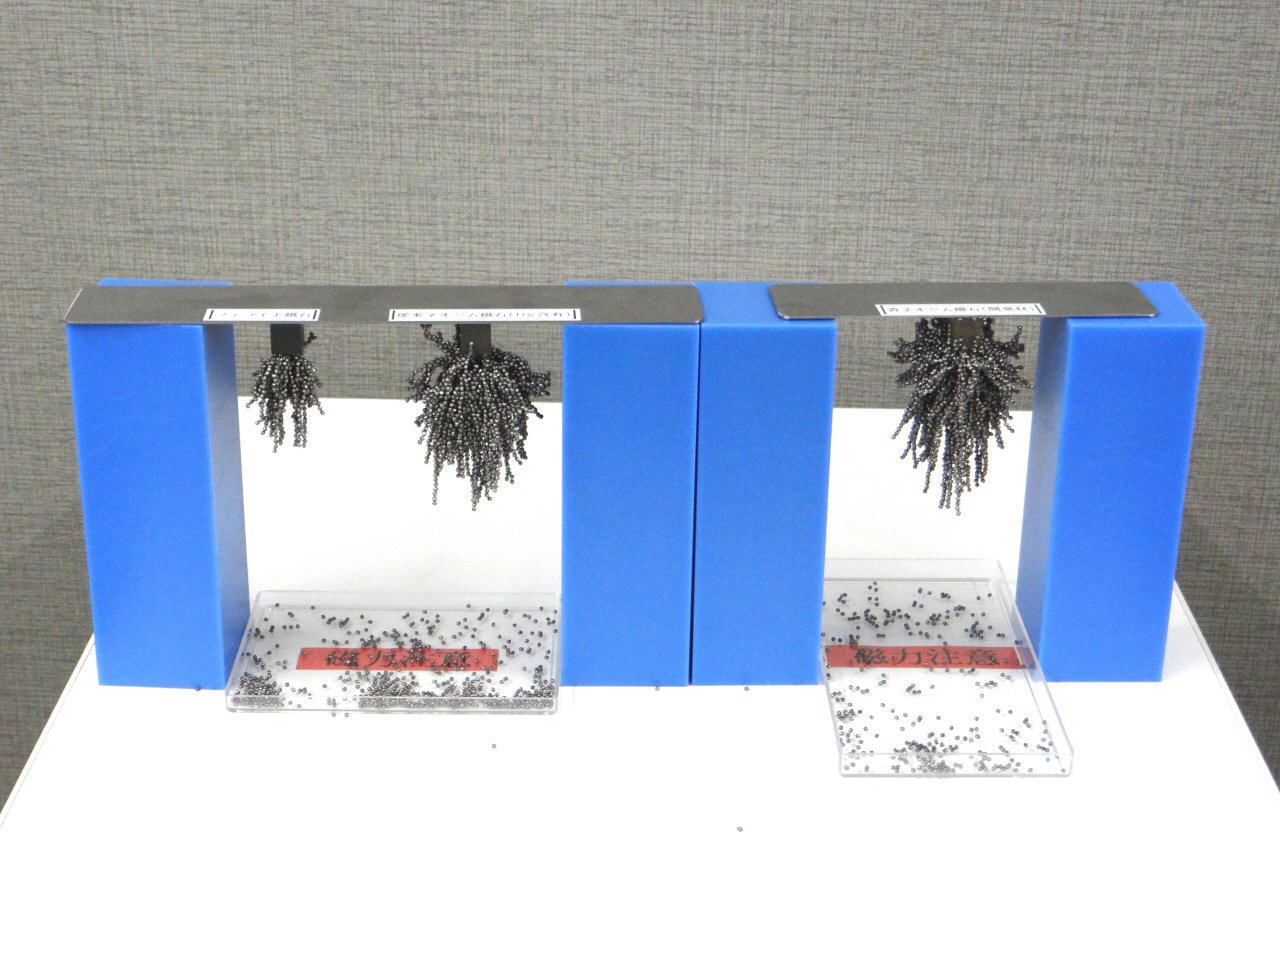 左からフェライト磁石、従来のネオジム磁石（ディスプロシウム含有）、今回開発したネオジム磁石